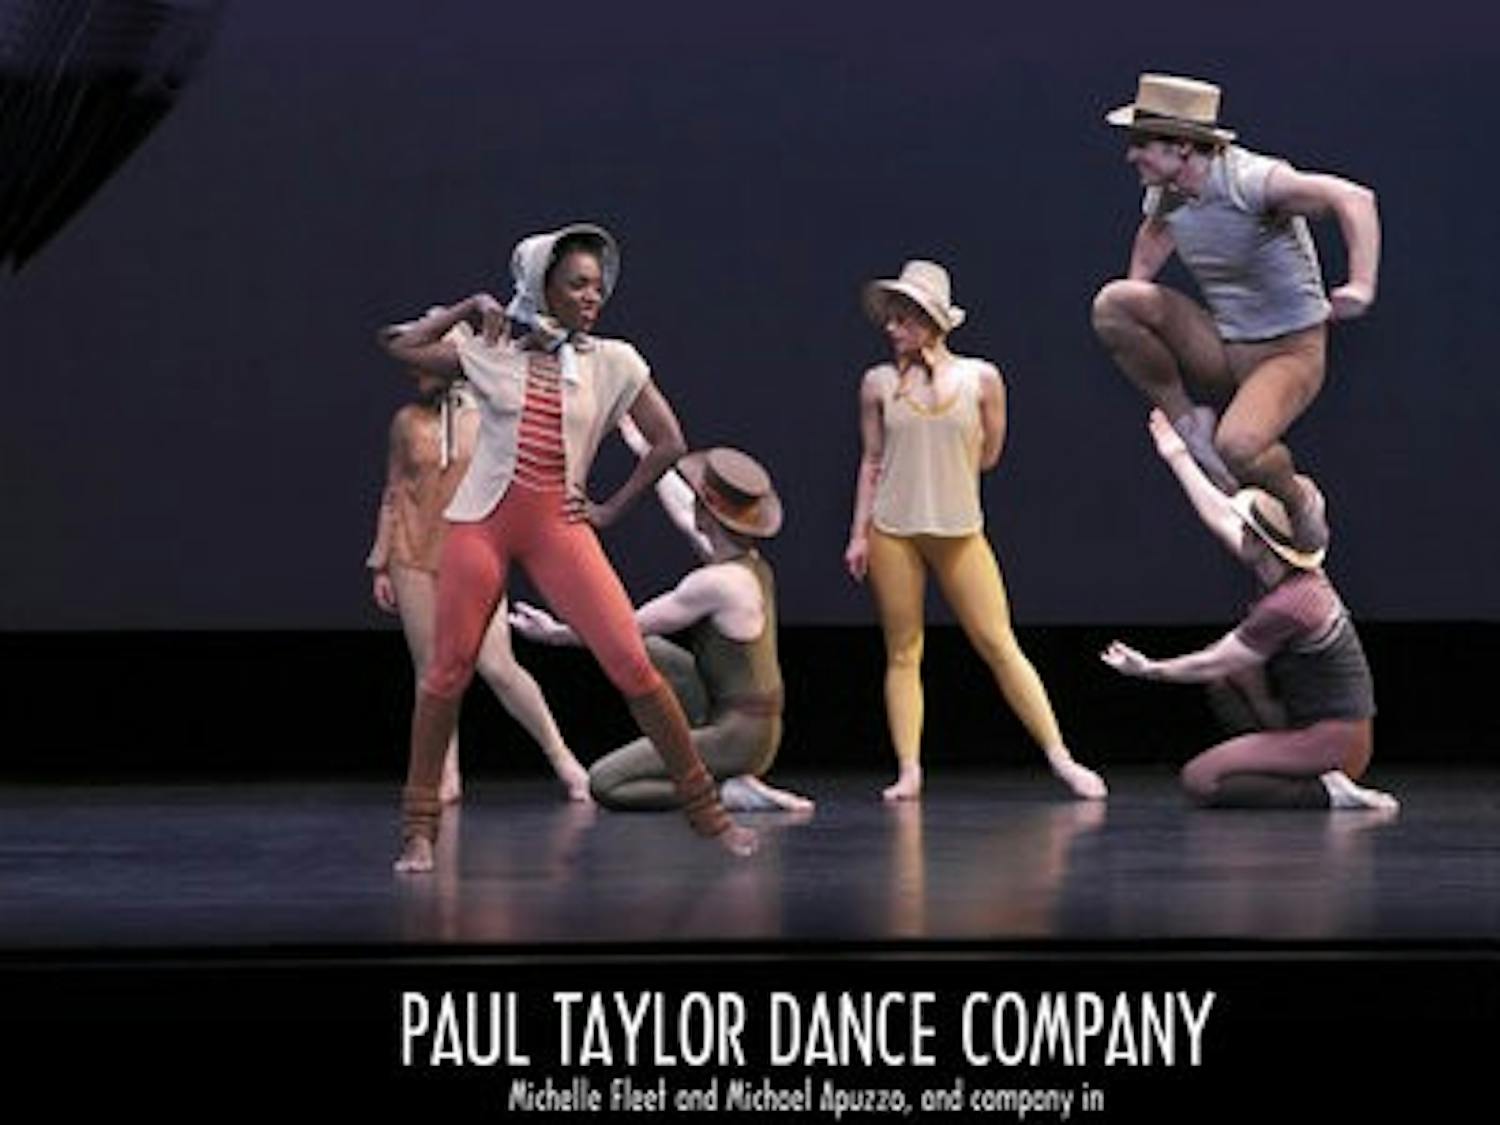 Paul Taylor Dance